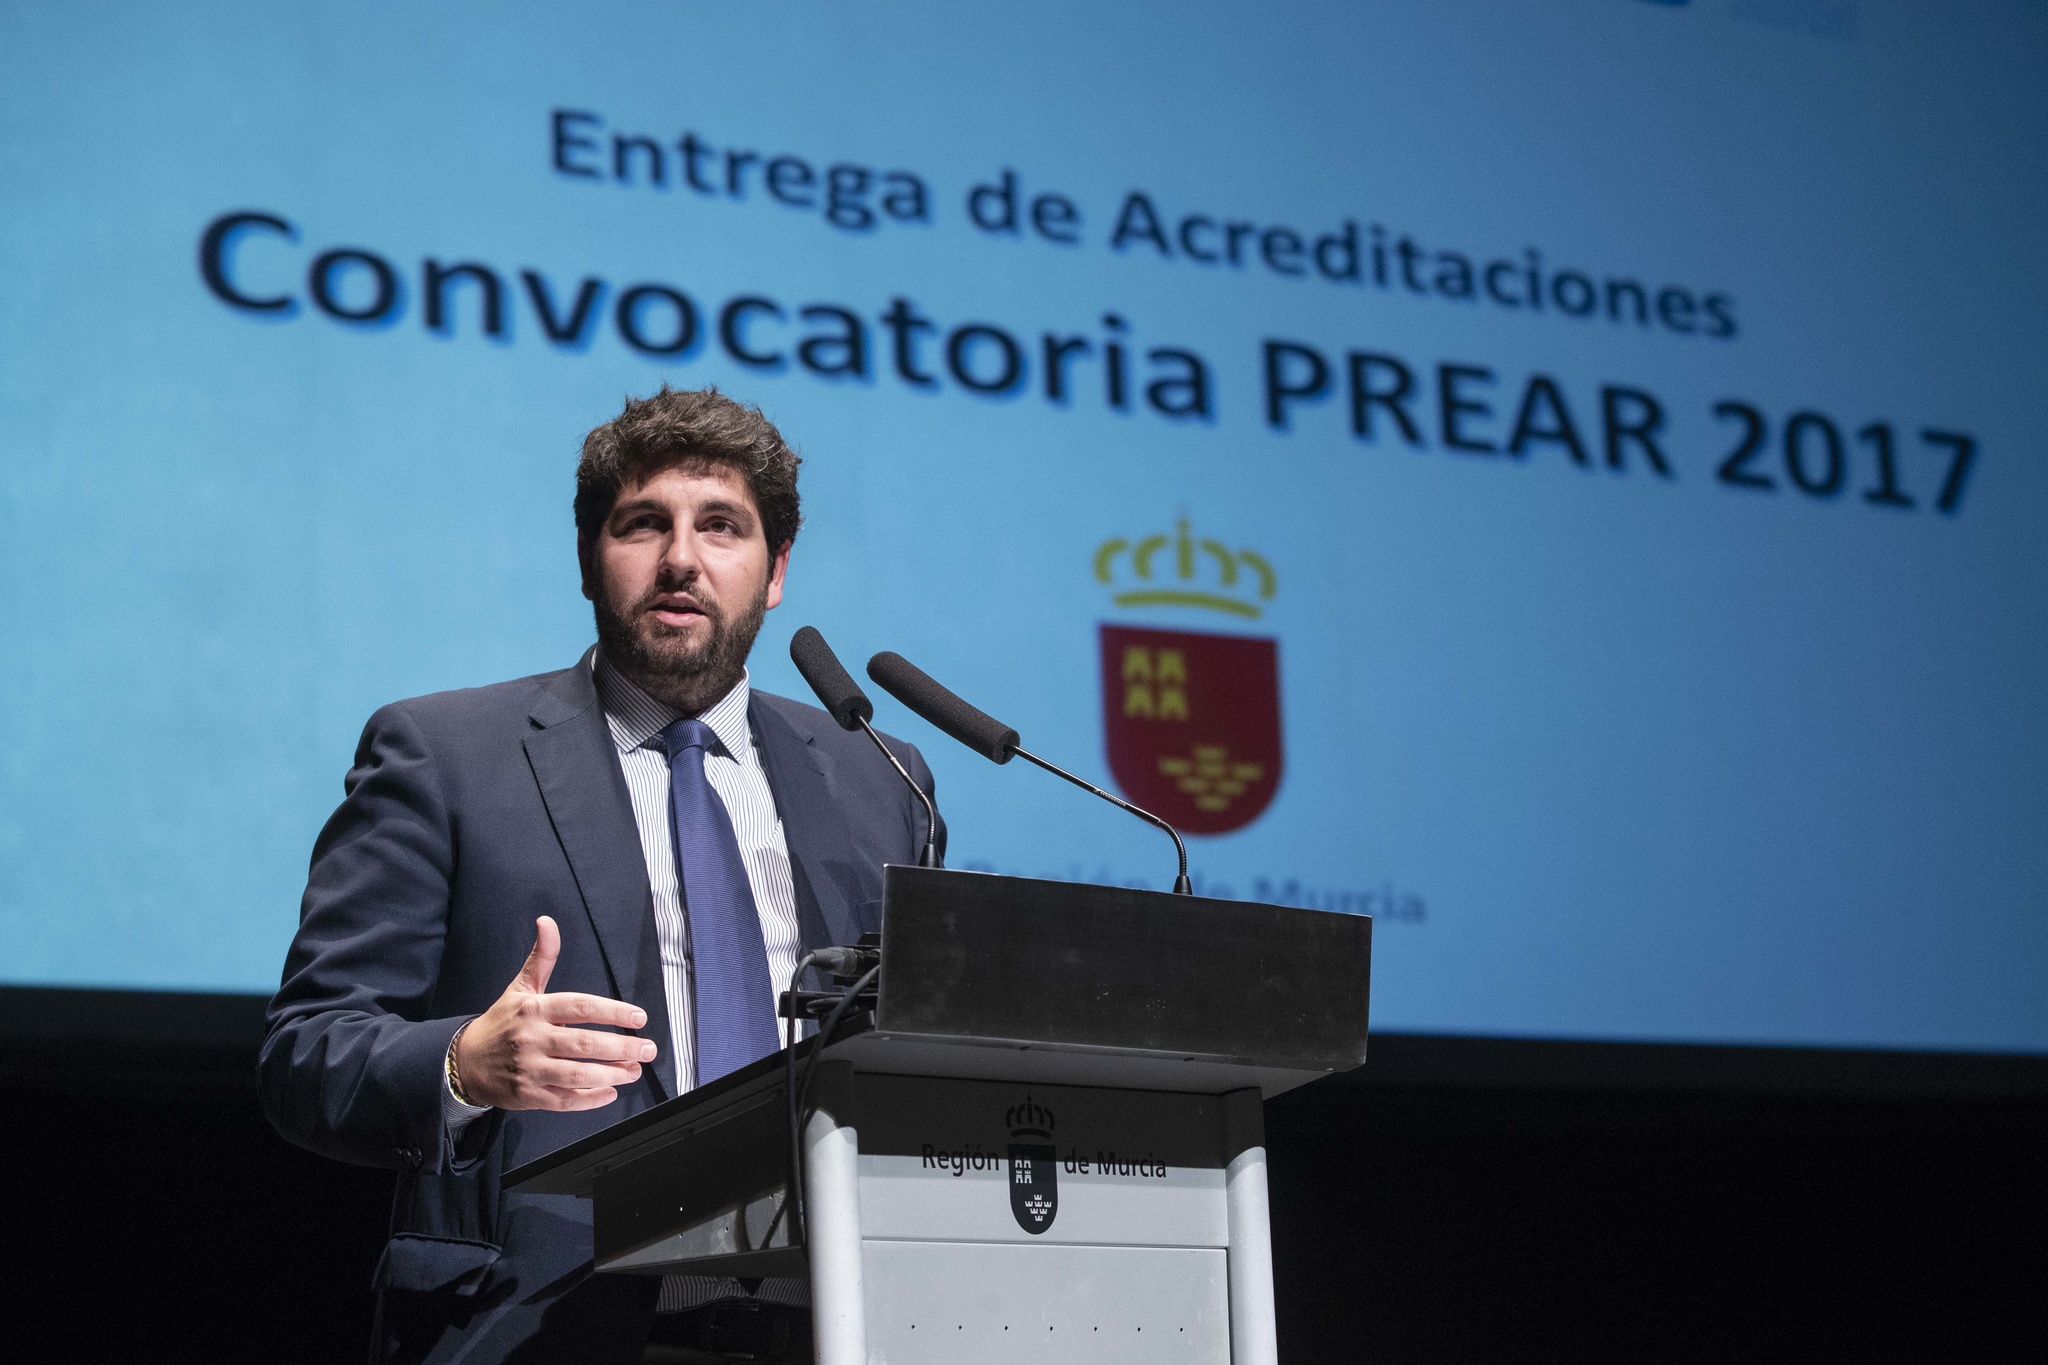 El presidente de la Comunidad, Fernando López Miras, entrega las acreditaciones profesionales (PREAR)